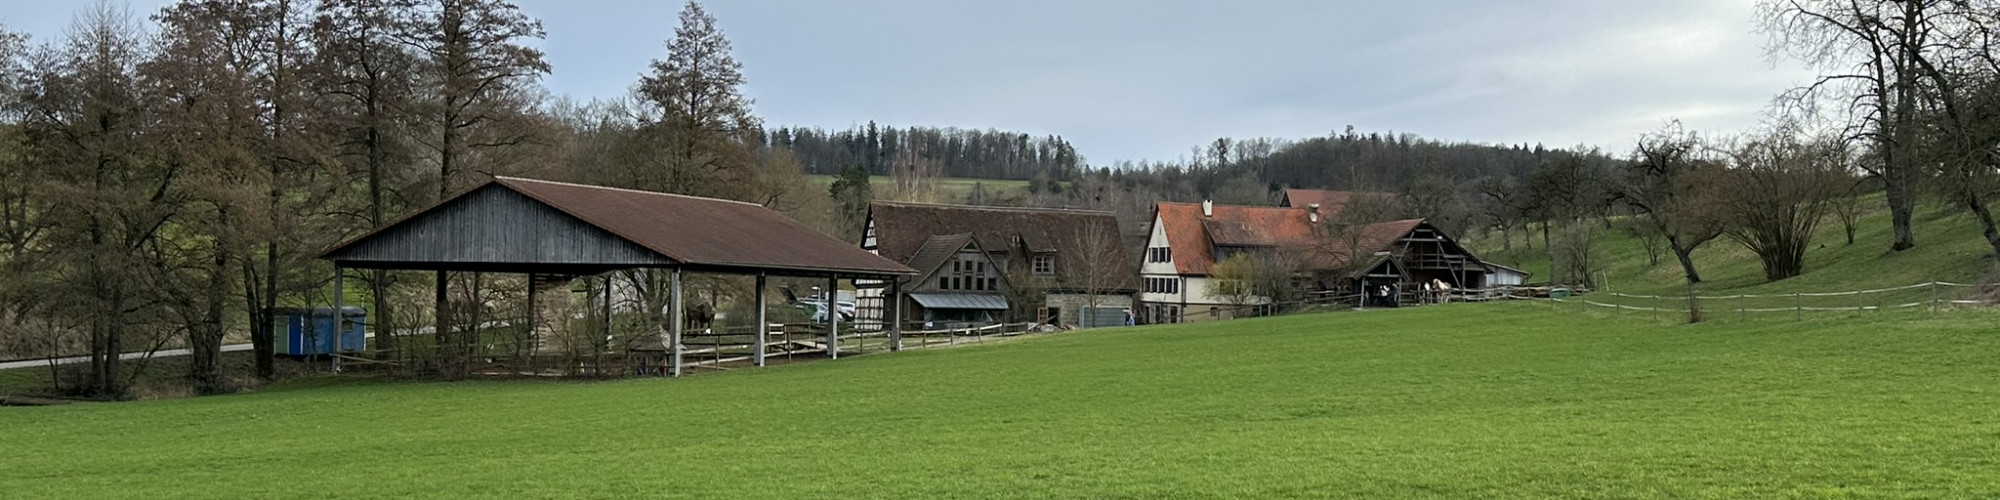 Ferienhaus Gersmühle